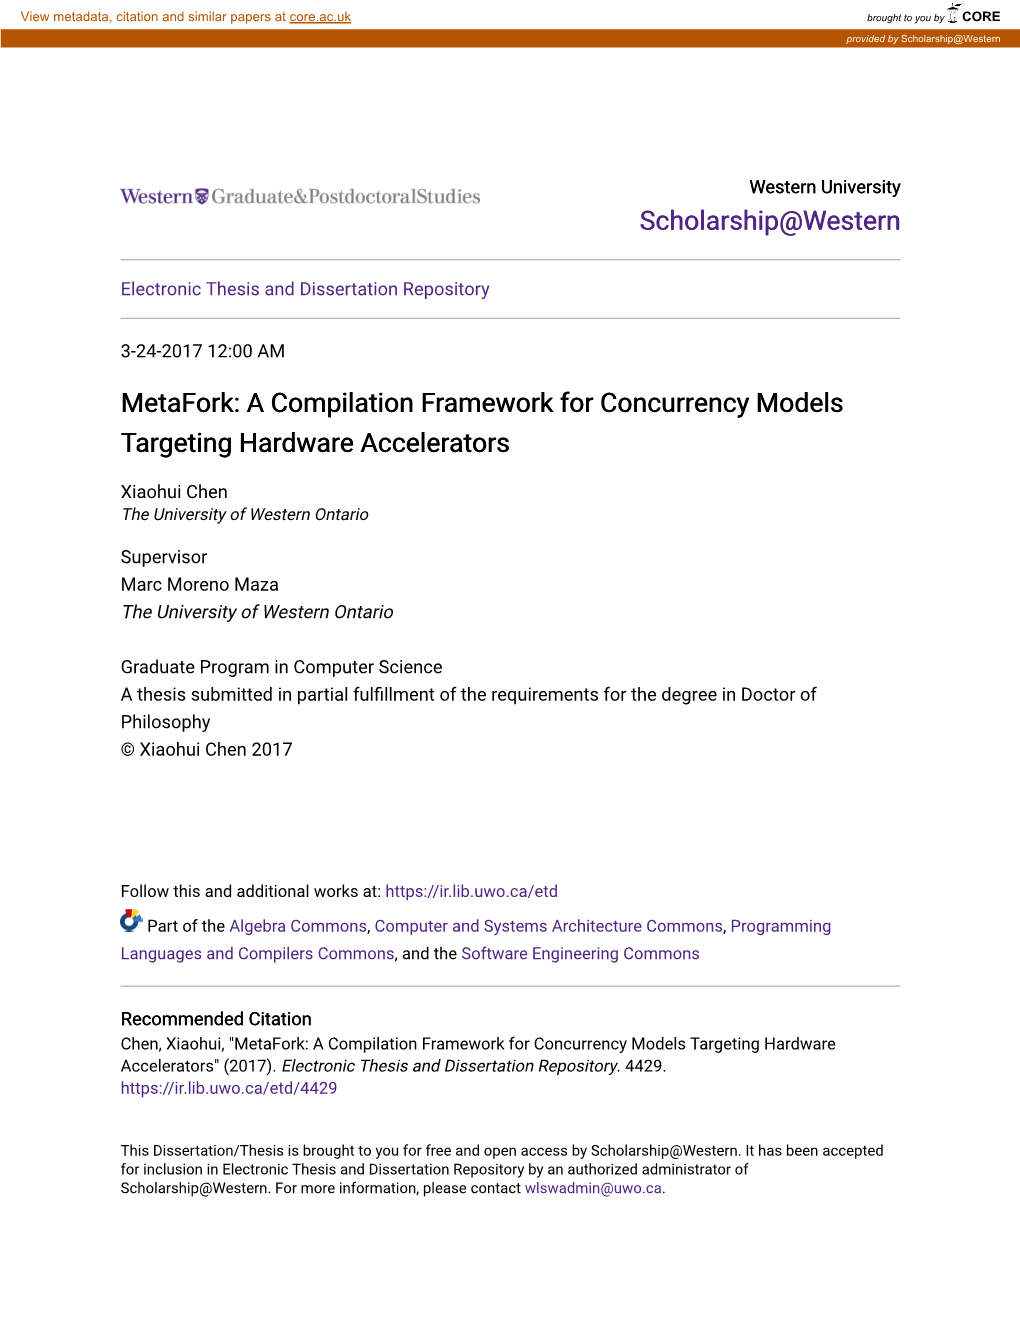 Metafork: a Compilation Framework for Concurrency Models Targeting Hardware Accelerators